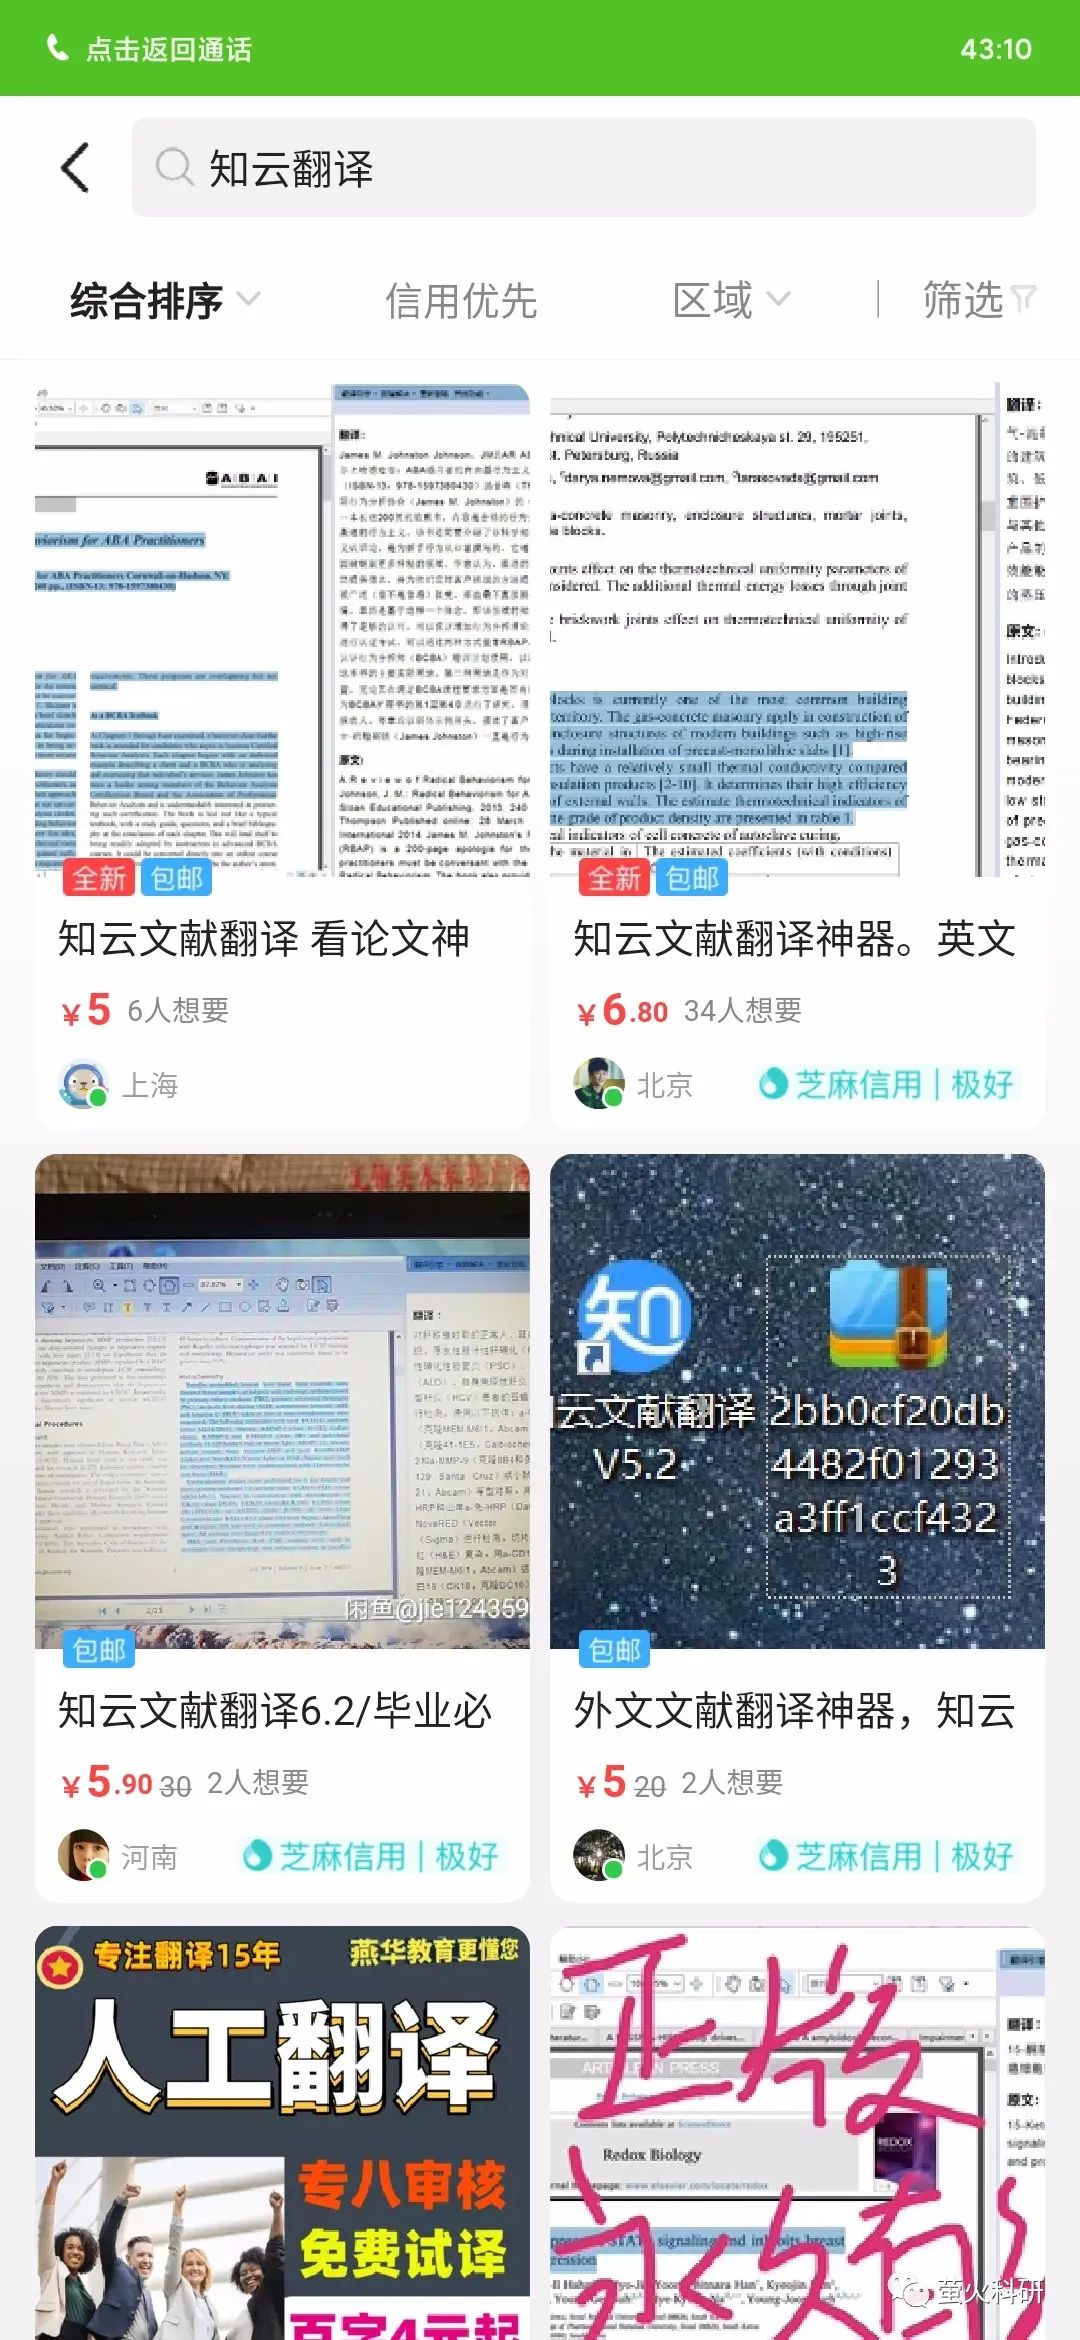 谷歌生物医学专用翻译 翻译神器 推荐一款免费阅读 翻译英文文献的神器 大家赶紧转发 给周围的同学 Weixin 的博客 程序员宅基地